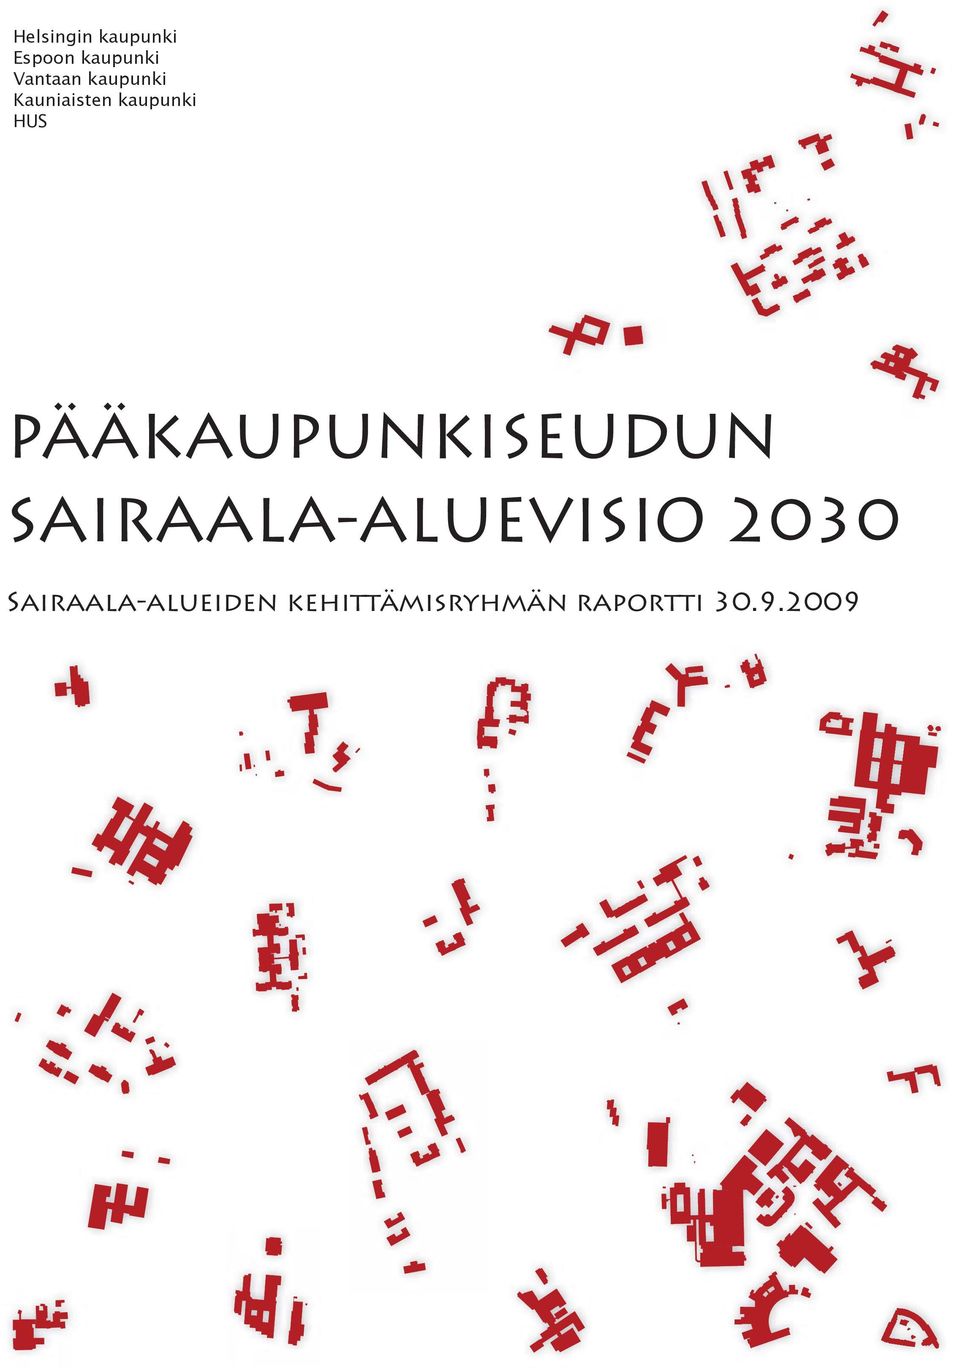 PÄÄKAUPUNKISEUDUN SAIRAALA-ALUEVISIO 2030